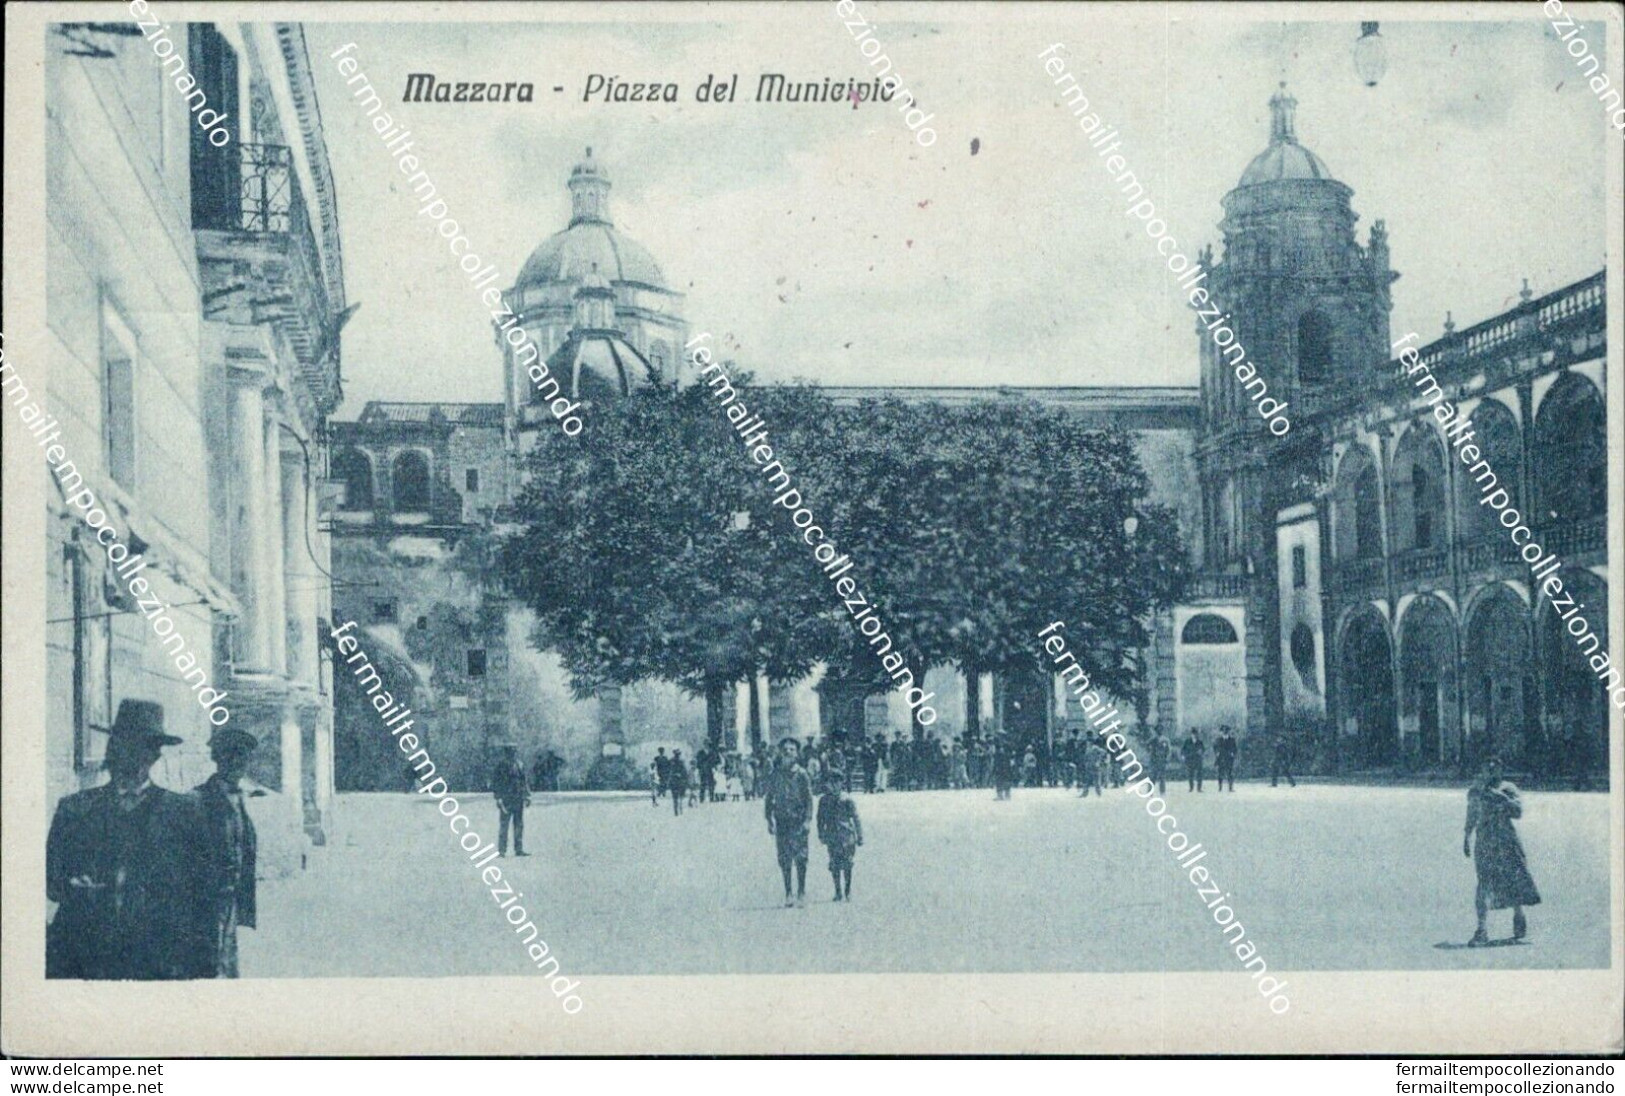 Cl443 Cartolina Mazzara Piazza Del Municipio Provincia Di Trapani Sicilia - Trapani